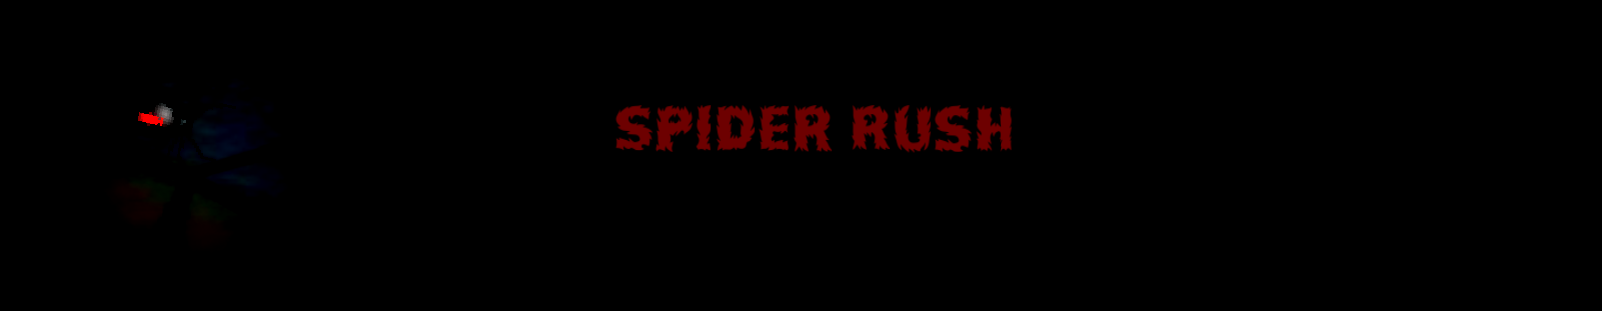 Spider Rush